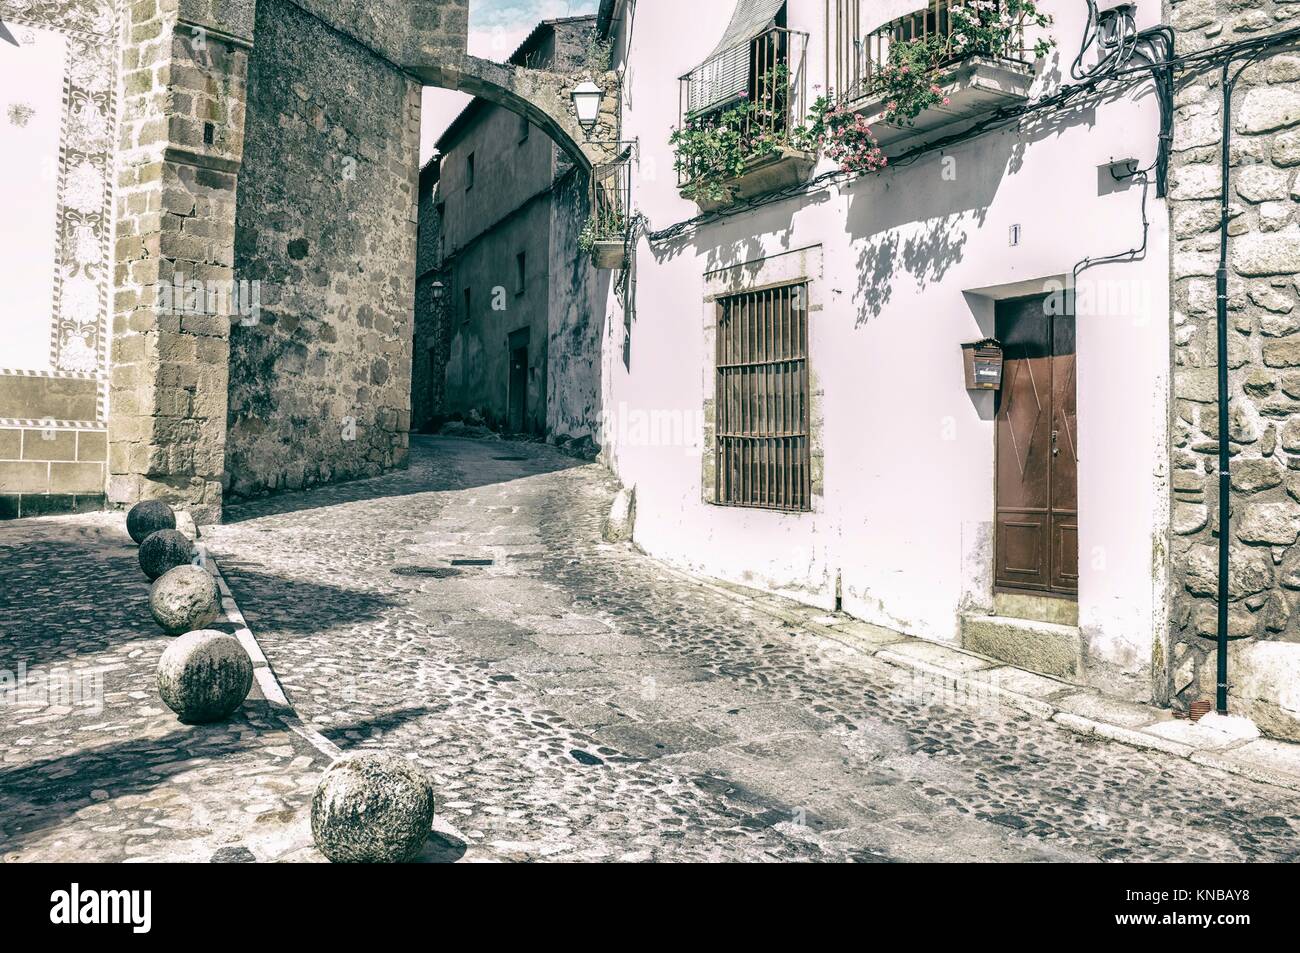 La pierre et les maisons blanchies à la chaux de Trujillo street, Estrémadure, Espagne. Vintage filtré. Banque D'Images